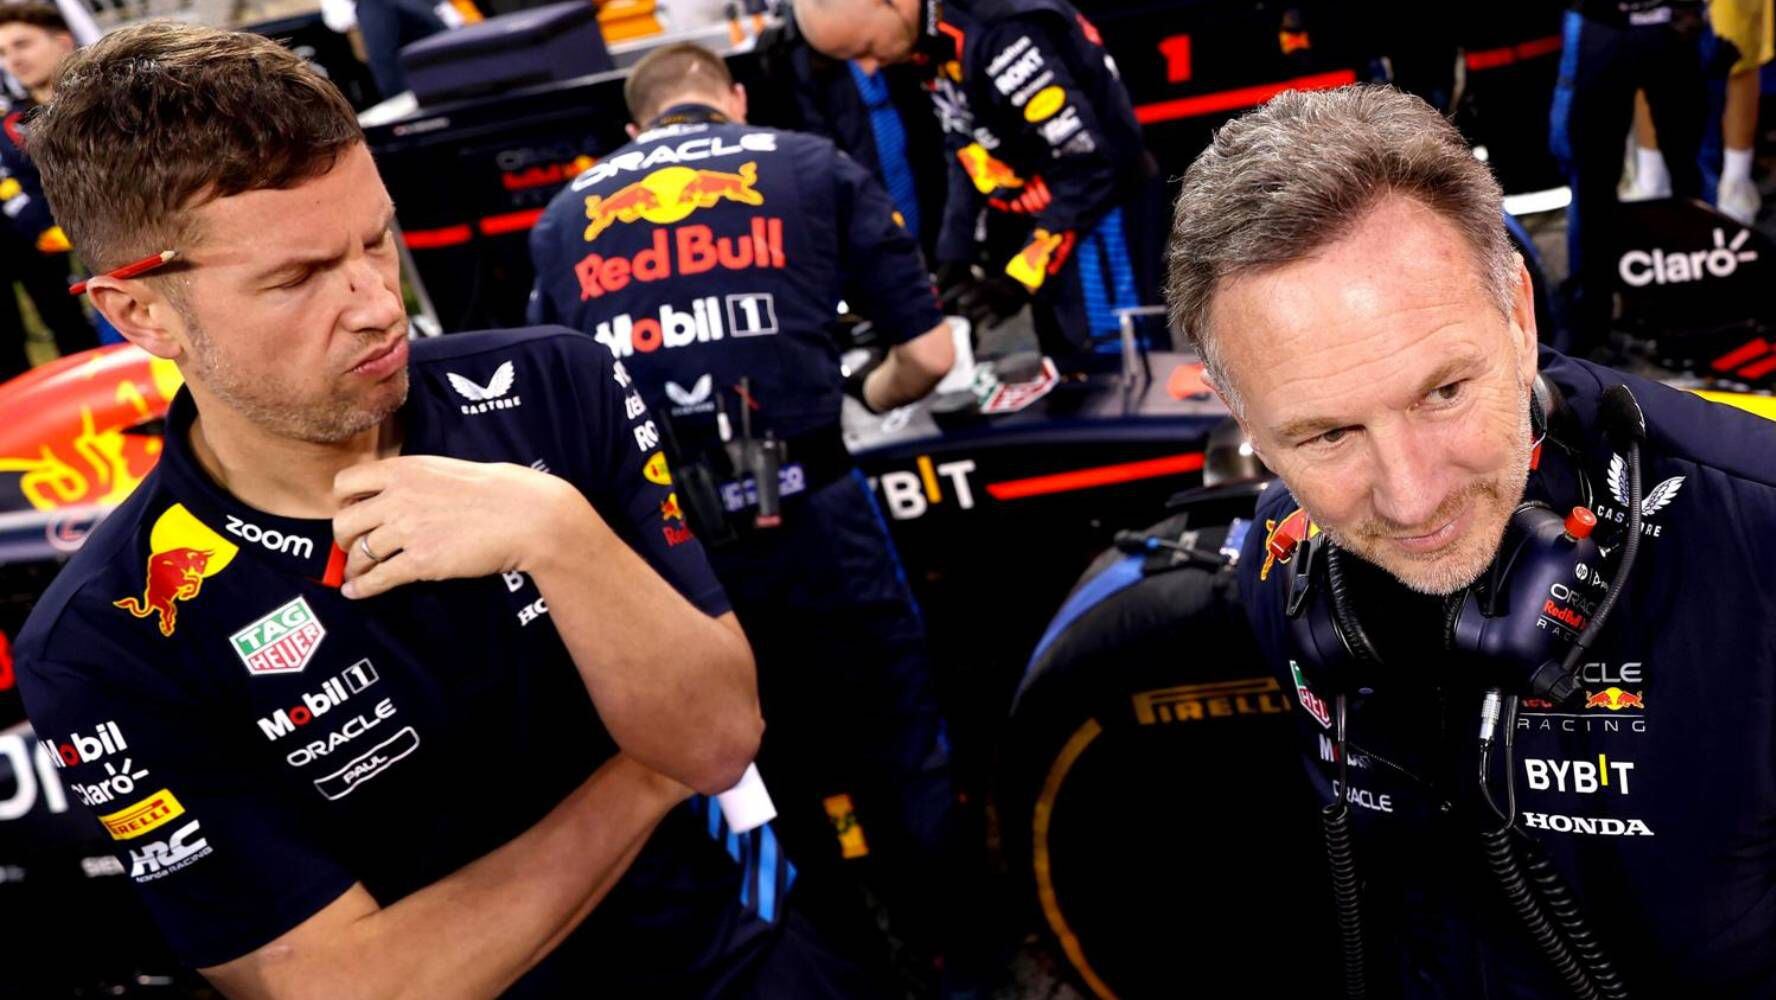 Christian Horner iba a ser despedido de Red Bull: Esto dice el supuesto comunicado de su salida